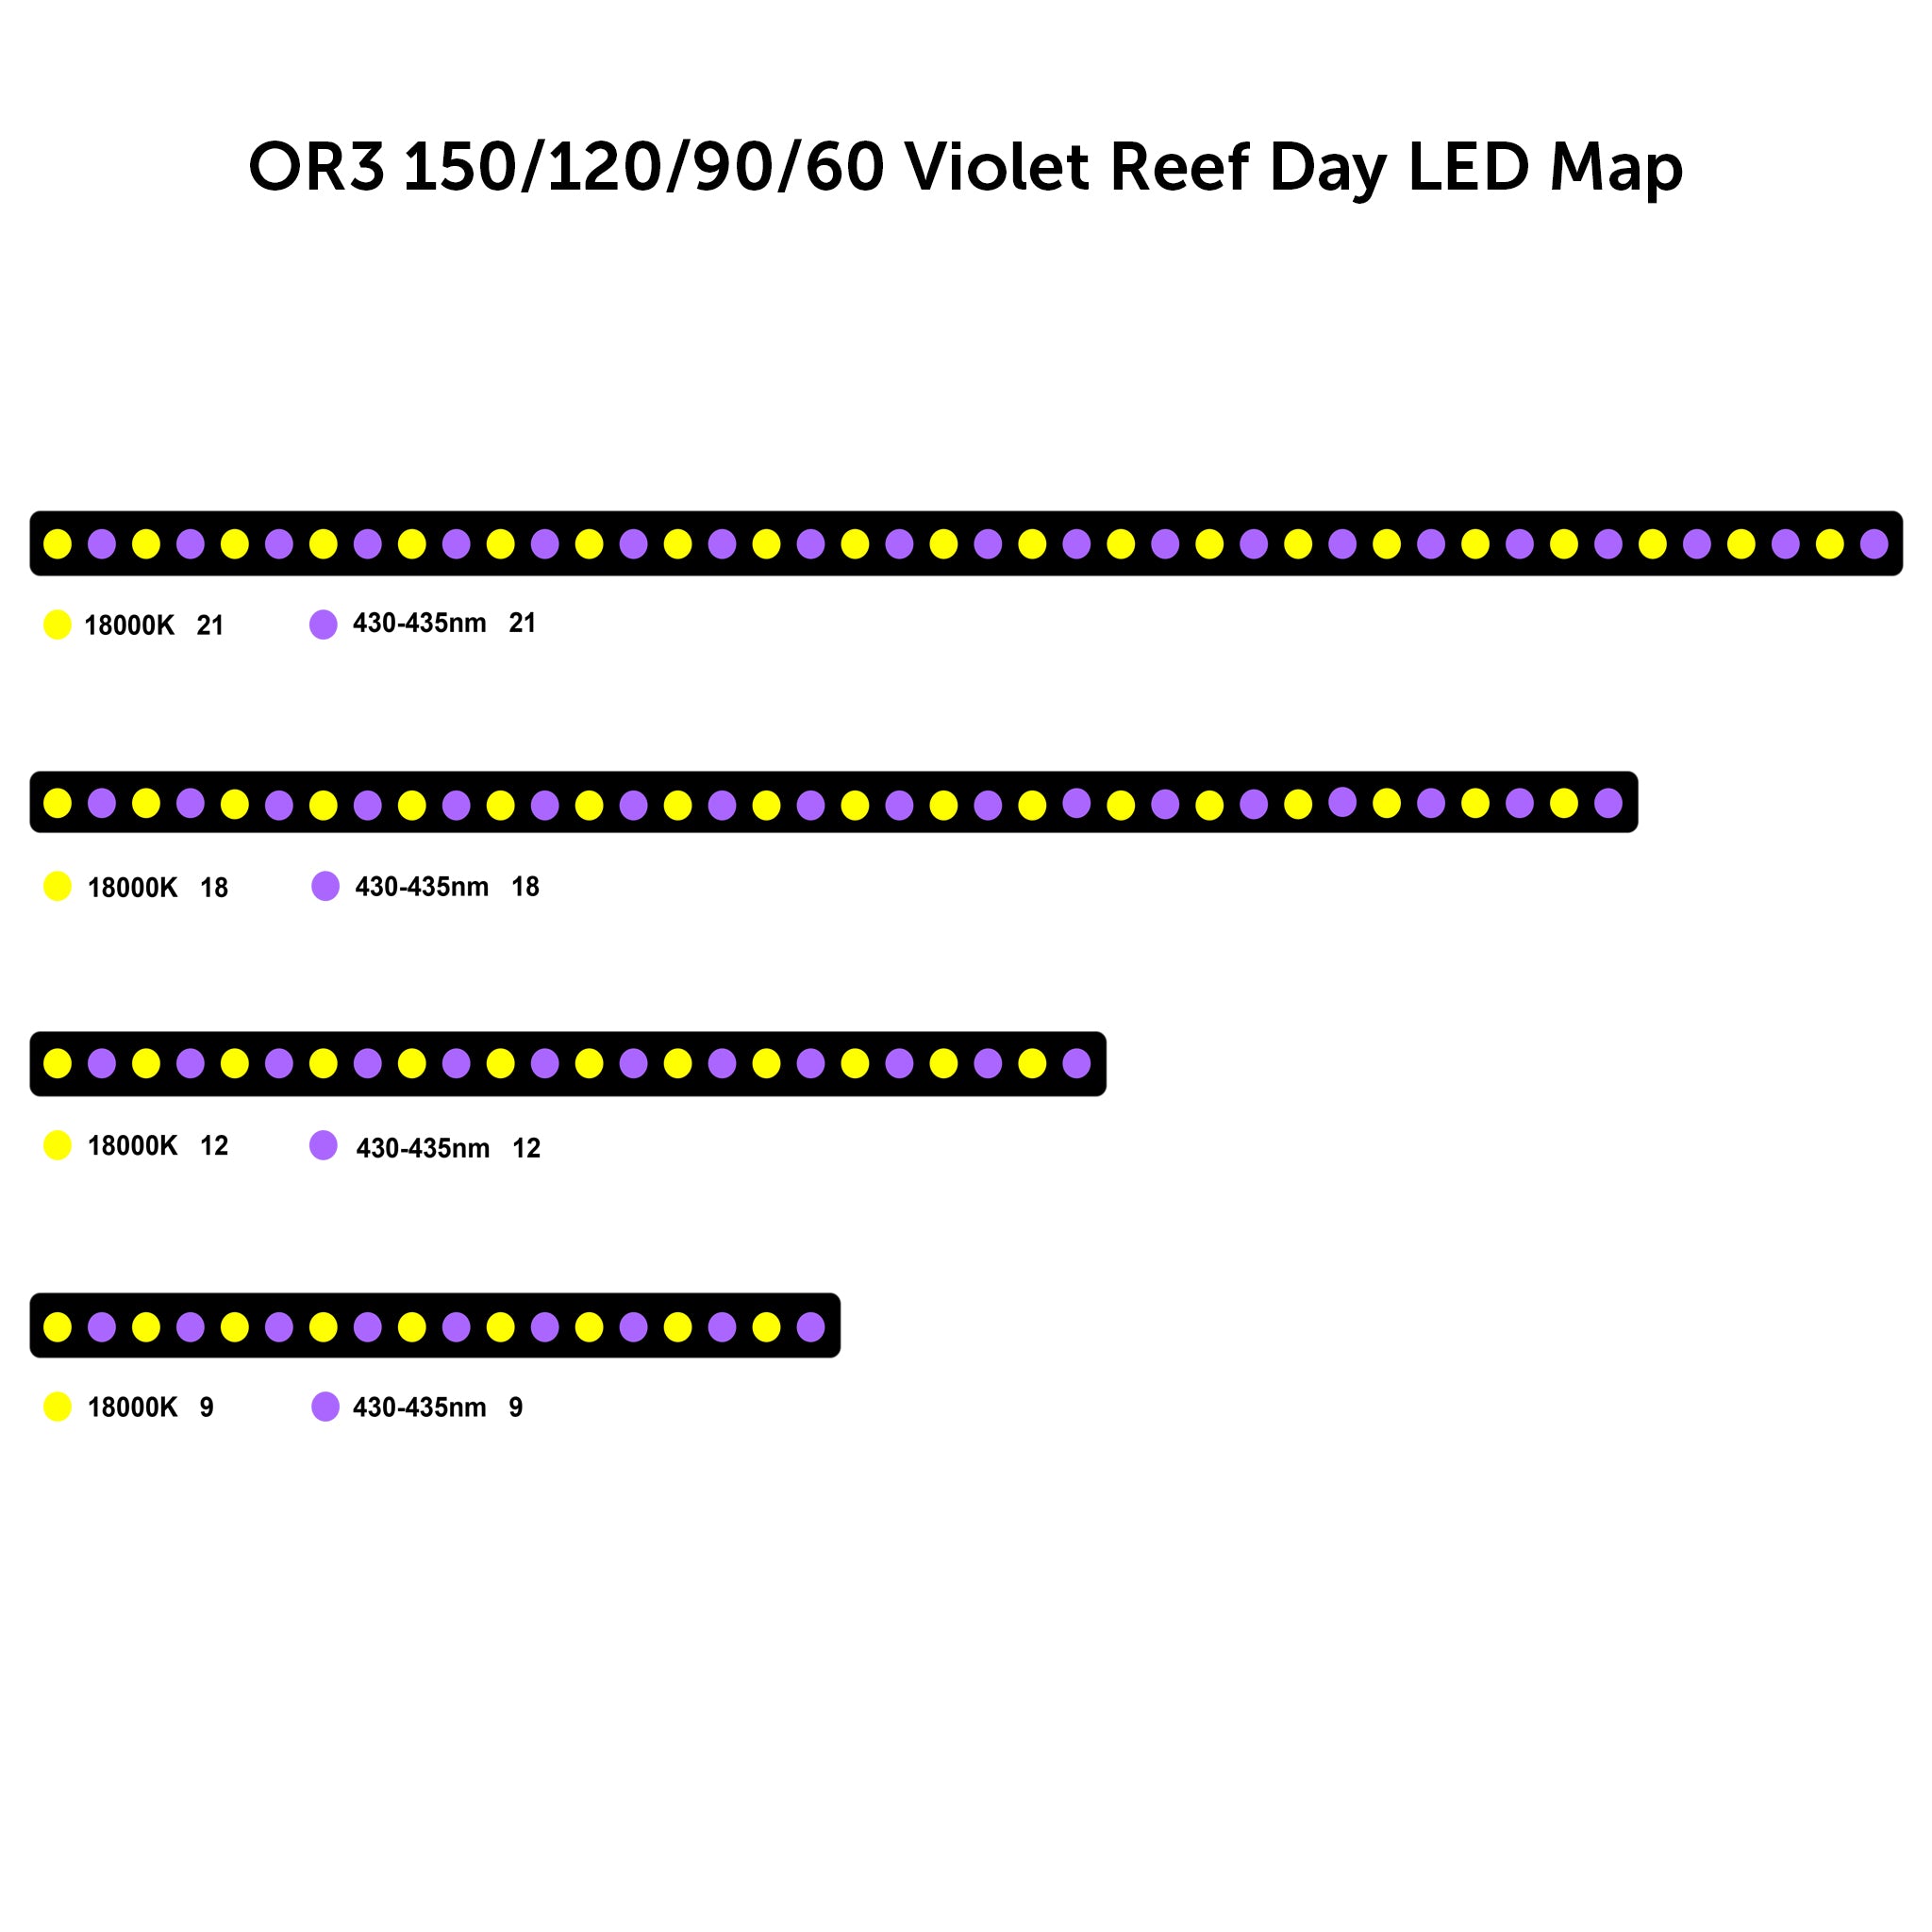 OR3 Violet Reef Day-Arrecife Acuario LED Bar